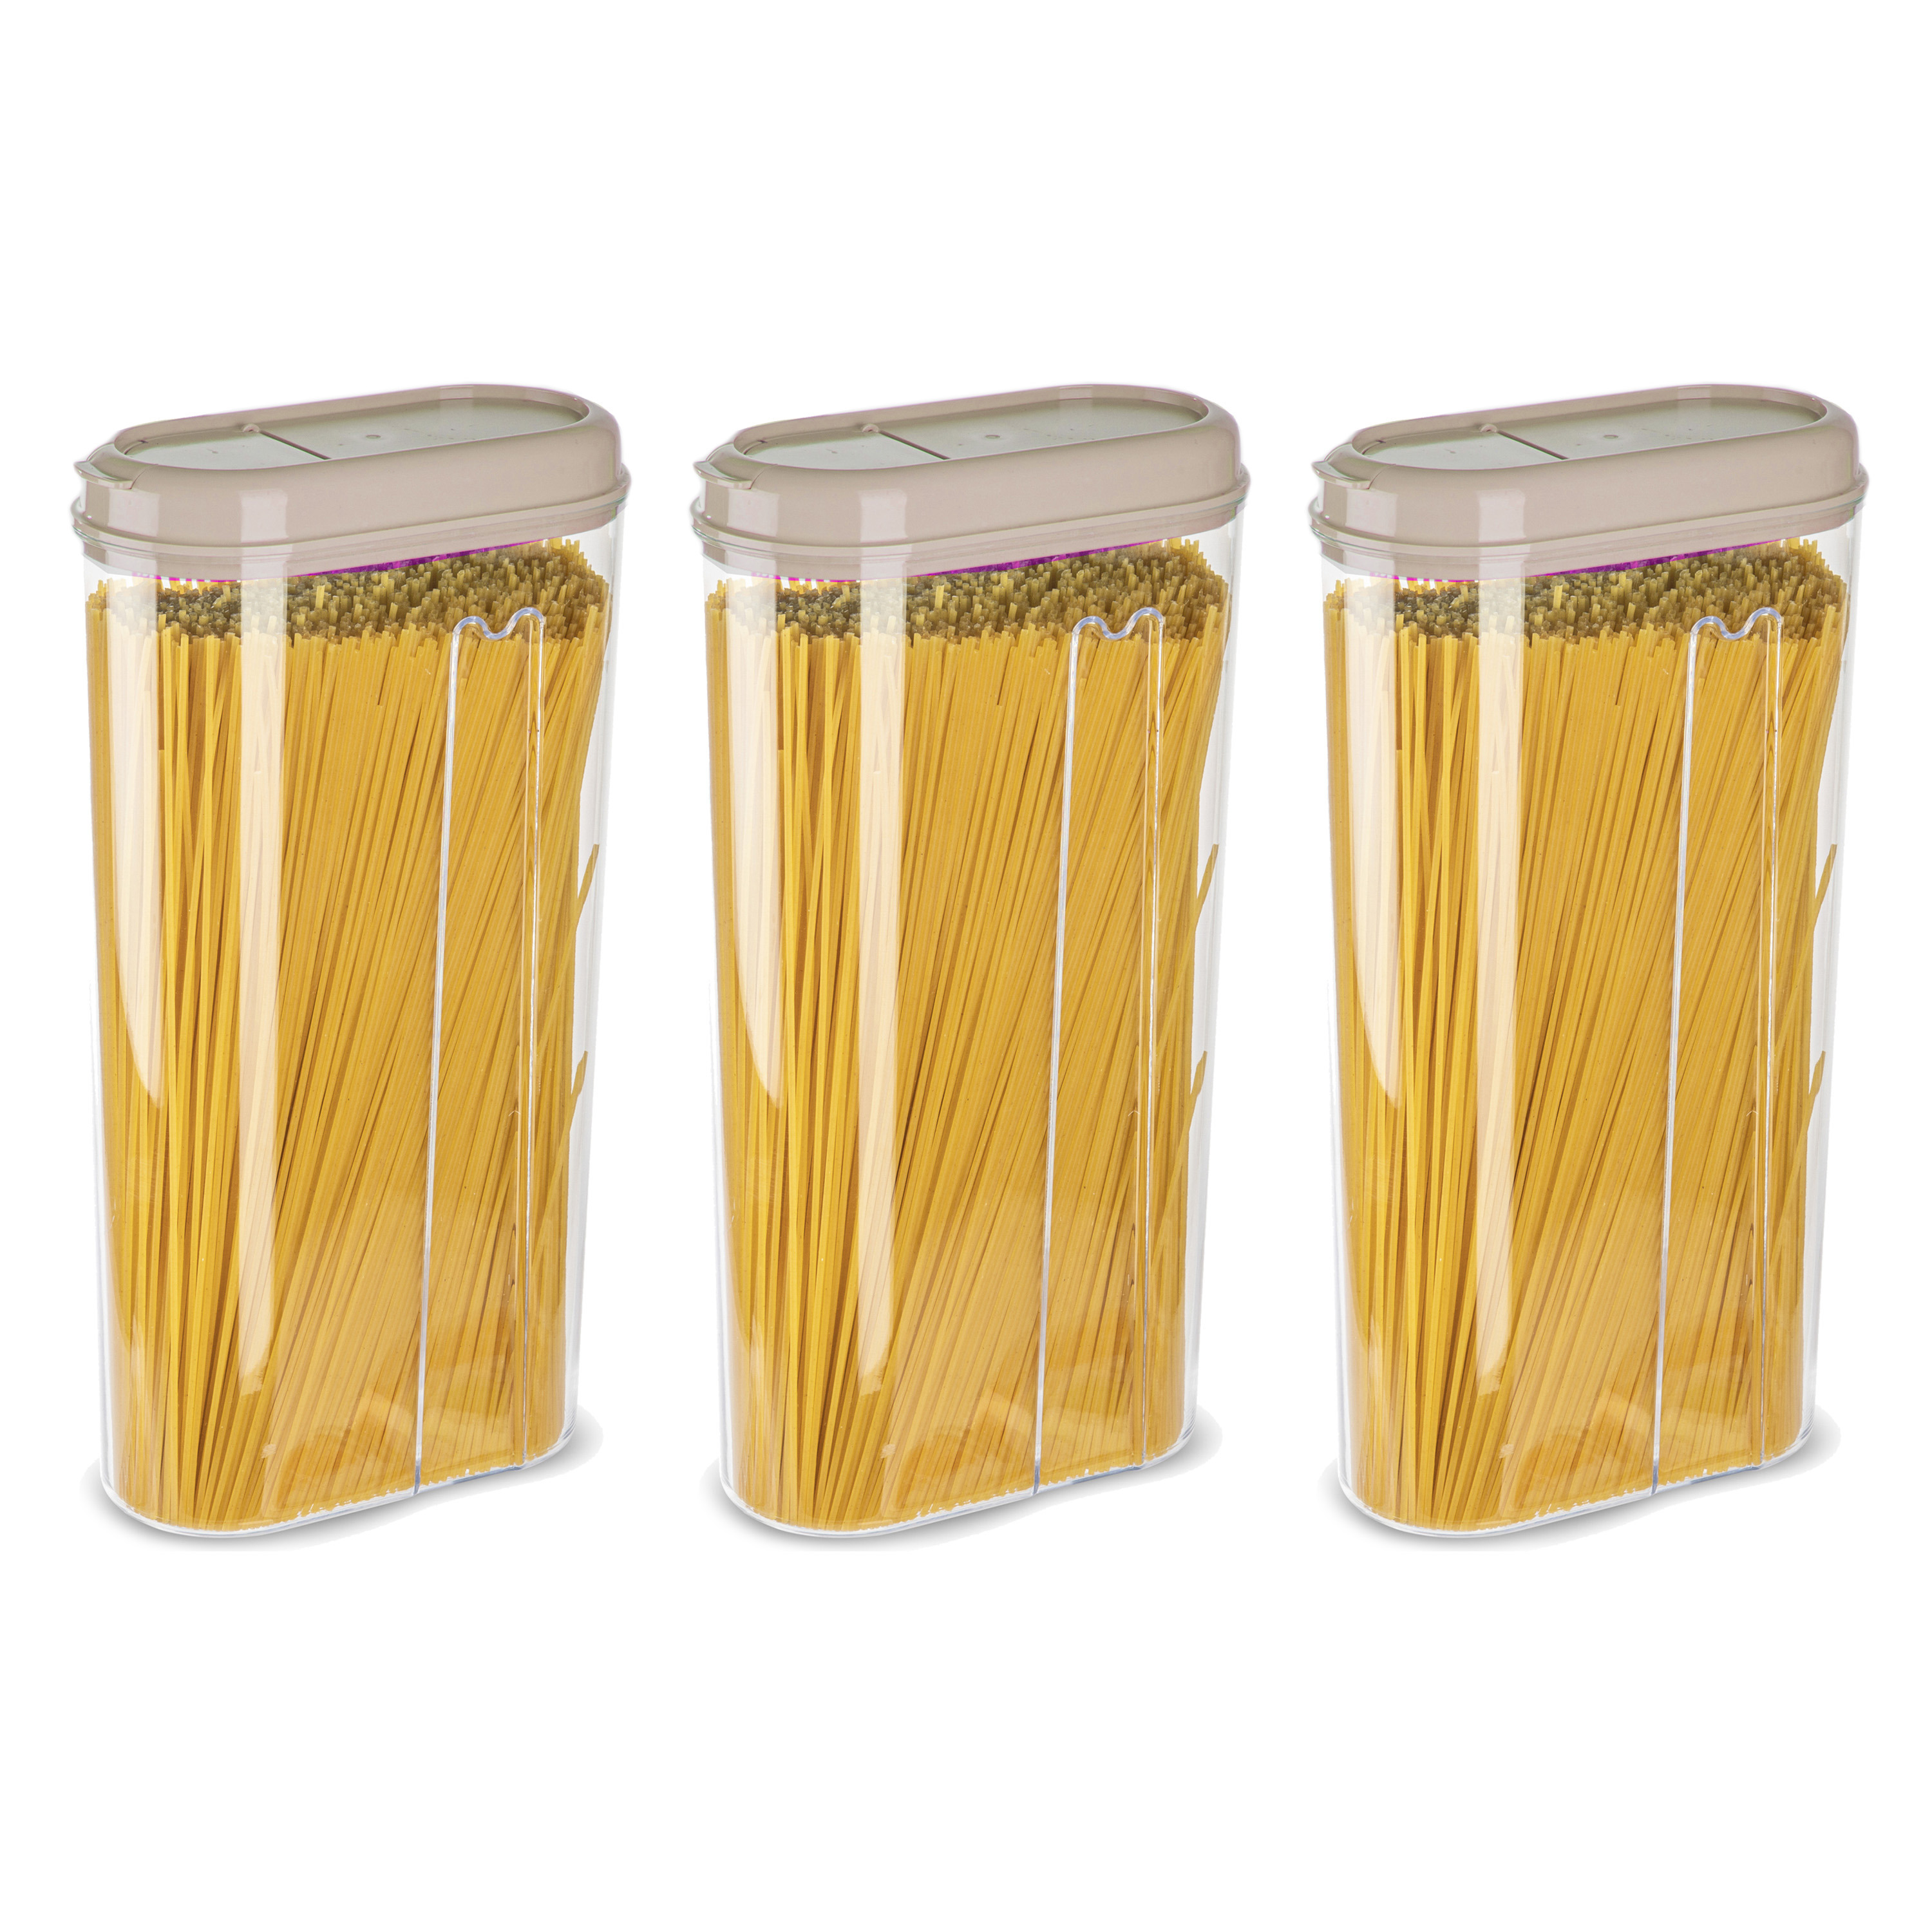 PlasticForte Voedselcontainer strooibus - 3x - beige - 2350 ml - kunststof - 15 x 8 x 30 cm - voorraadpot -